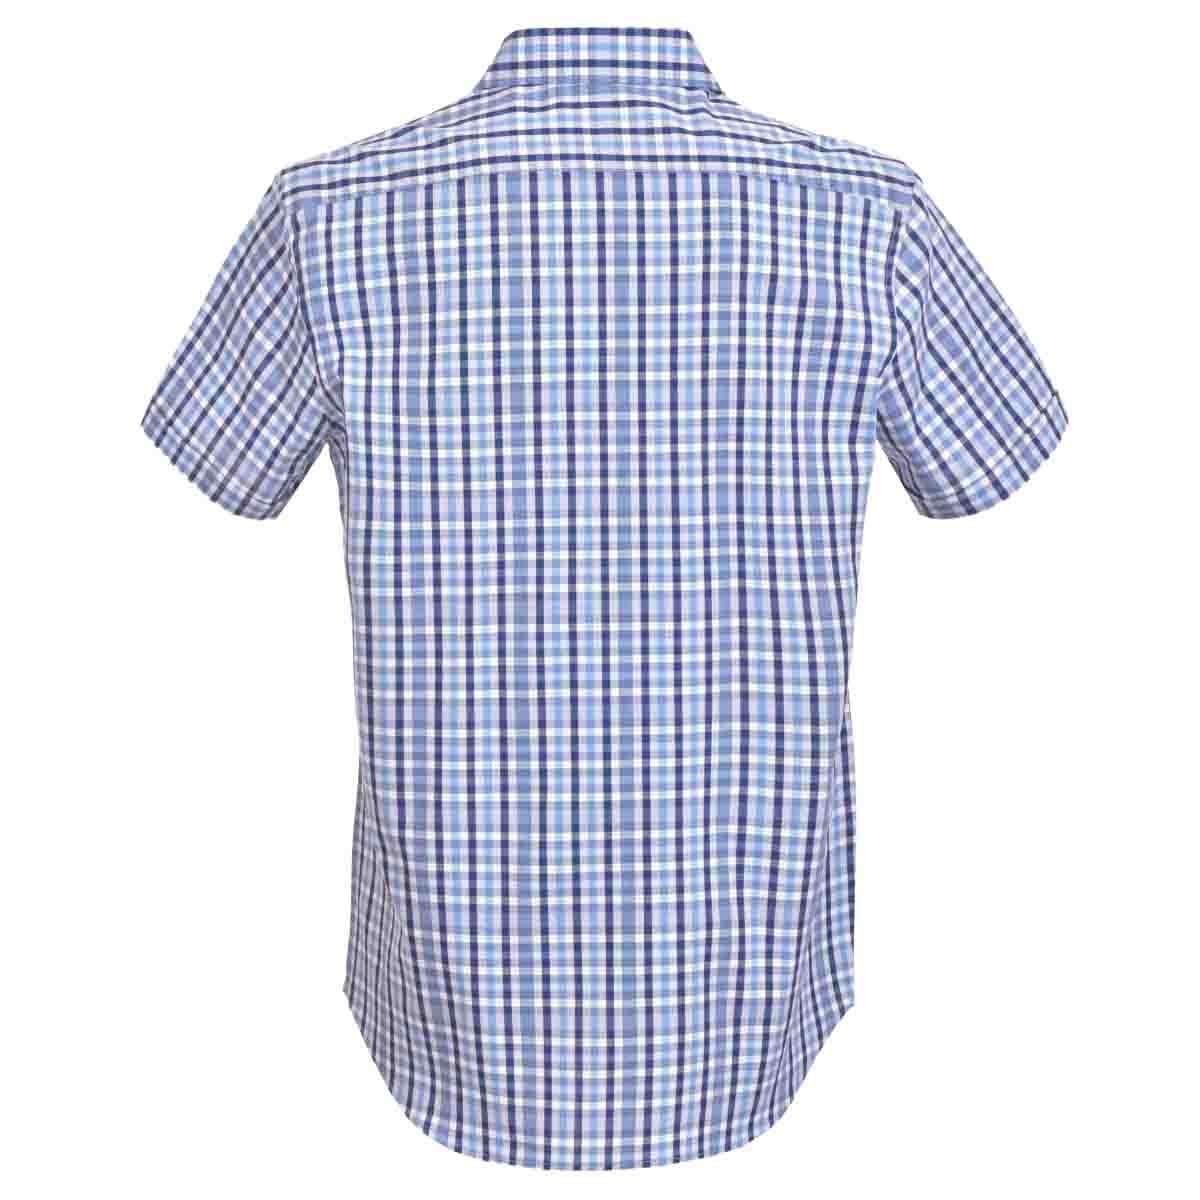 Camisa Manga Corta Casual a Cuadros Azul Carlo Corinto para Caballero